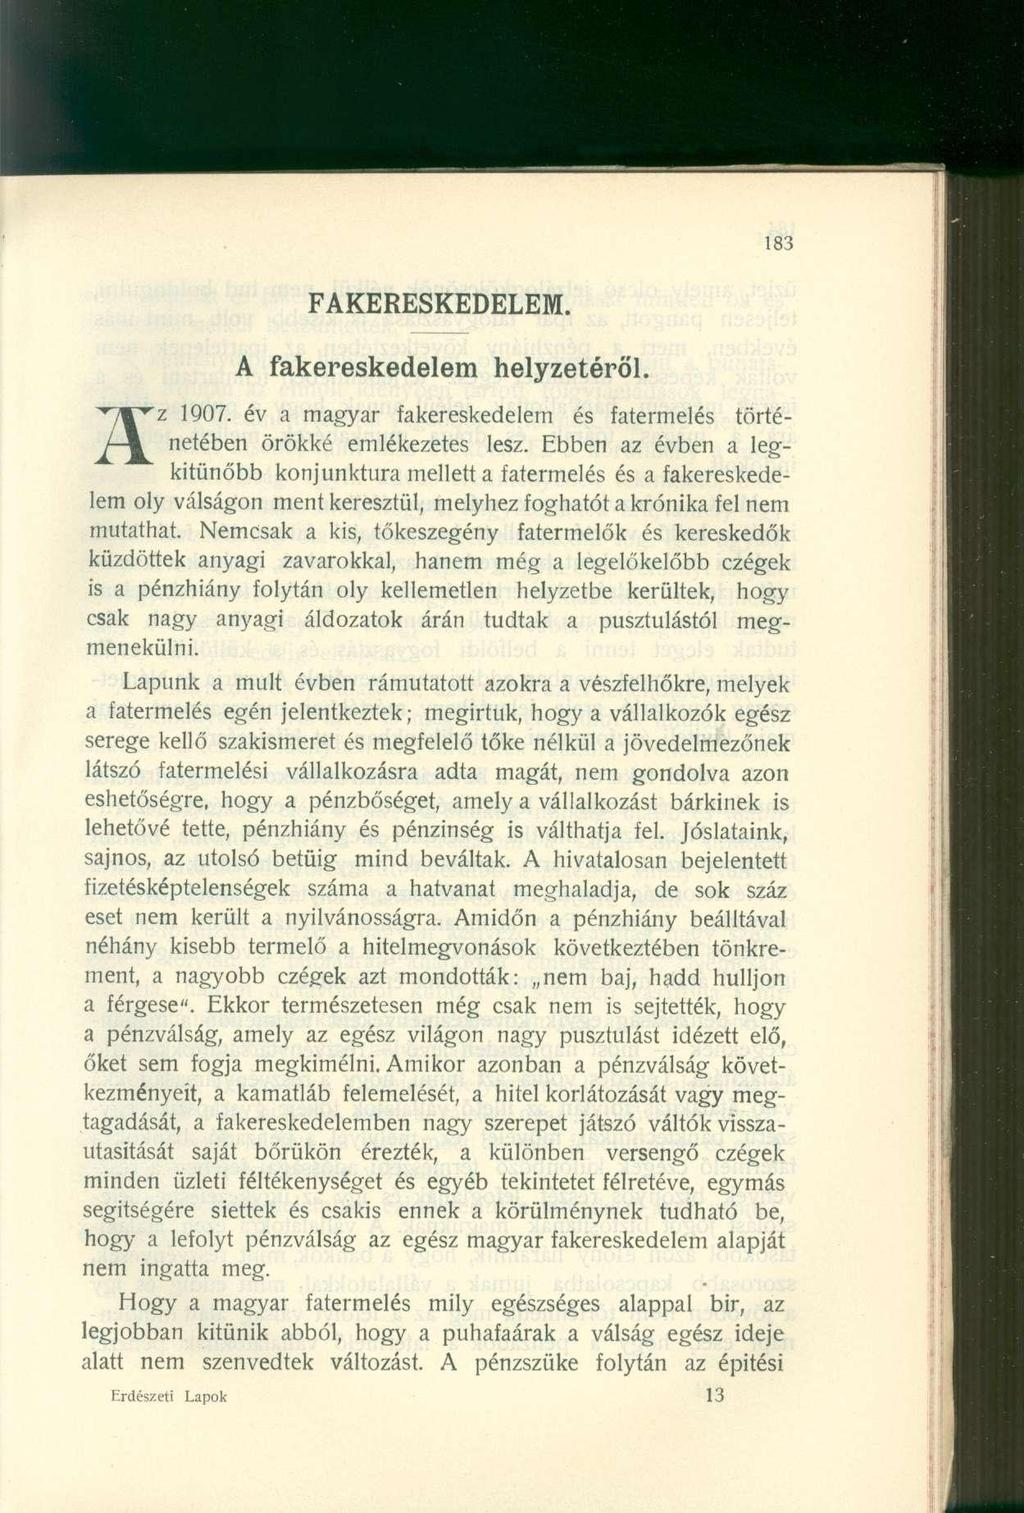 FAKERESKEDELEM. A fakereskedele m helyzetéről. z 1907. év a magyar fakereskedelem és fatermelés történetében örökké emlékezetes lesz.